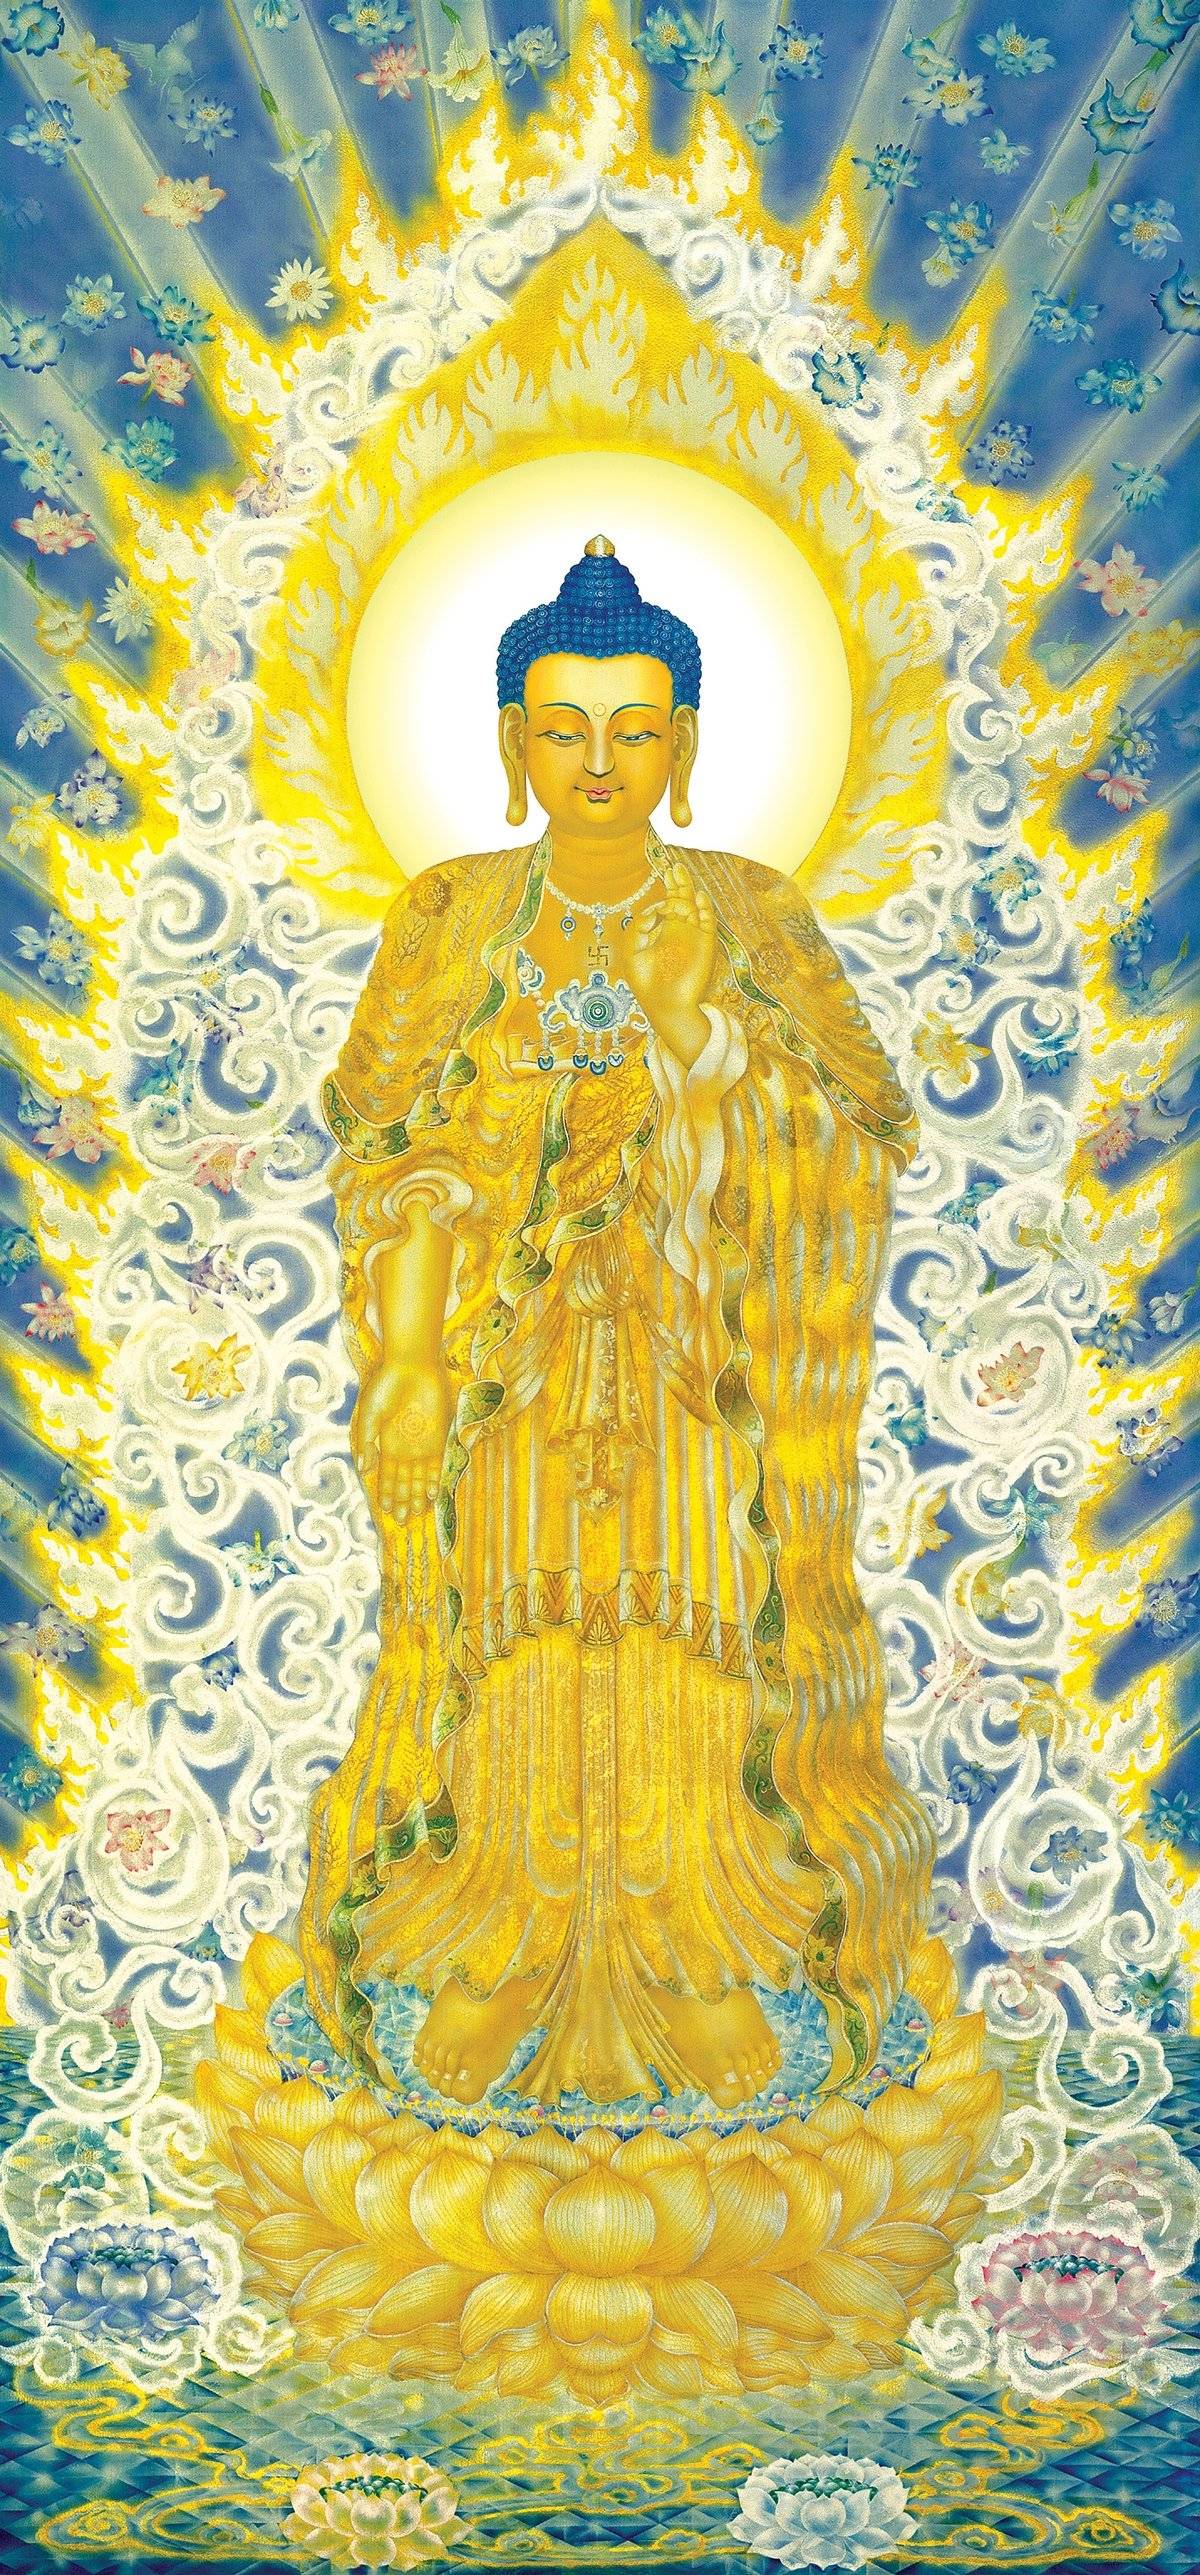 Amitabha Buddha (Buddha of Infinite Light) : Buddhism